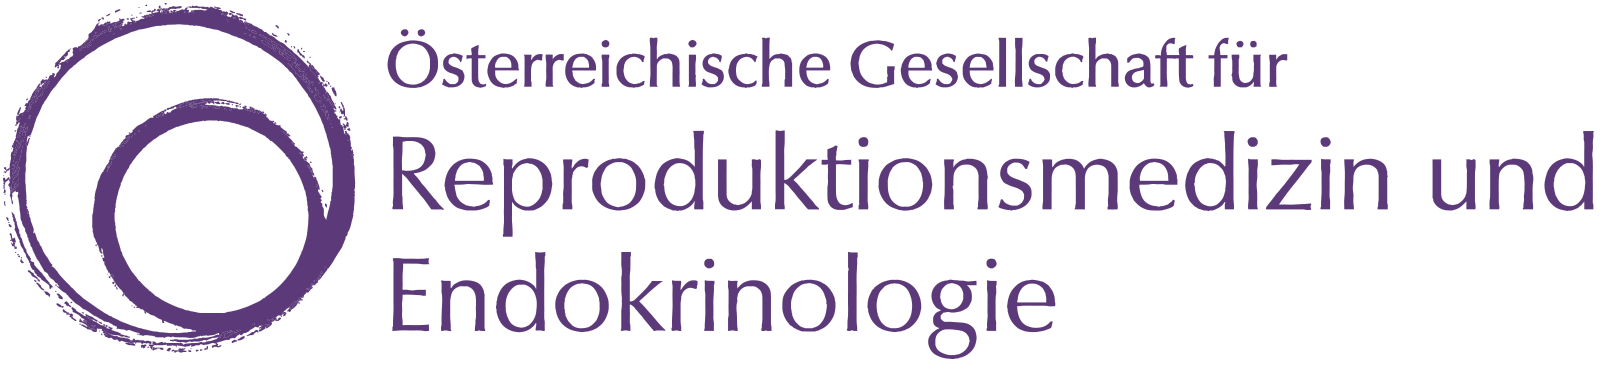 ÖGRM * Österreichische Gesellschaft für Reproduktionsmedizin und Endokrinologie